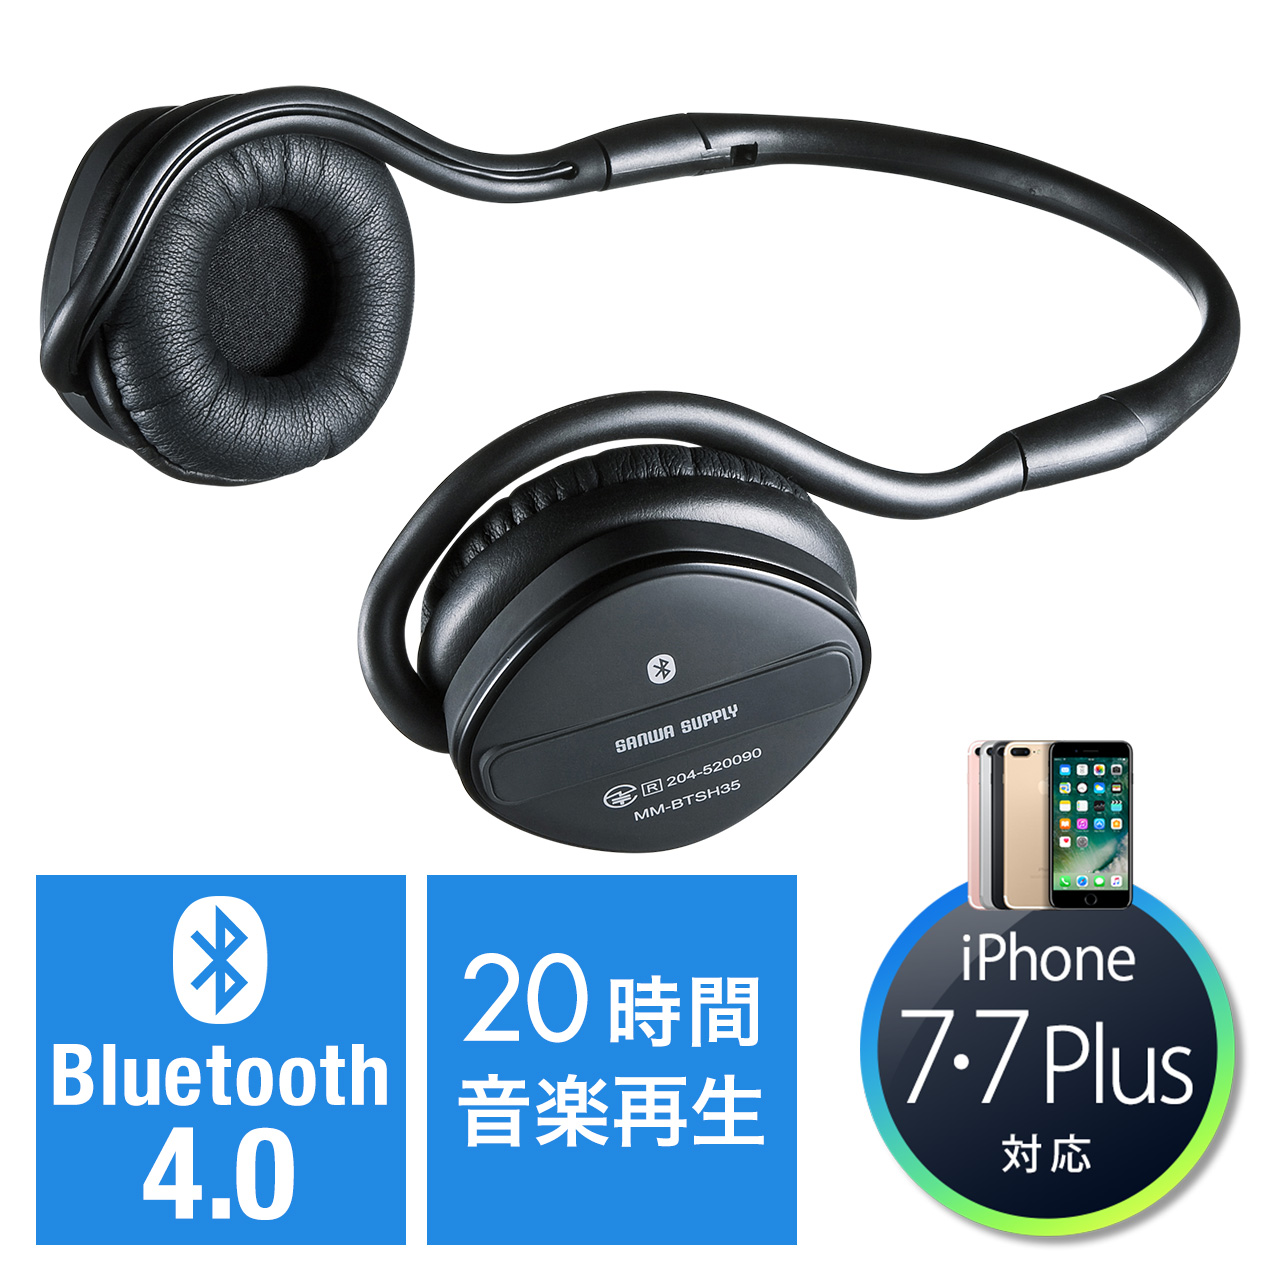 Bluetoothイヤホン ヘッドセット ネックバンド式 音楽 長時間再生 401 Hs006bkの販売商品 通販ならサンワダイレクト